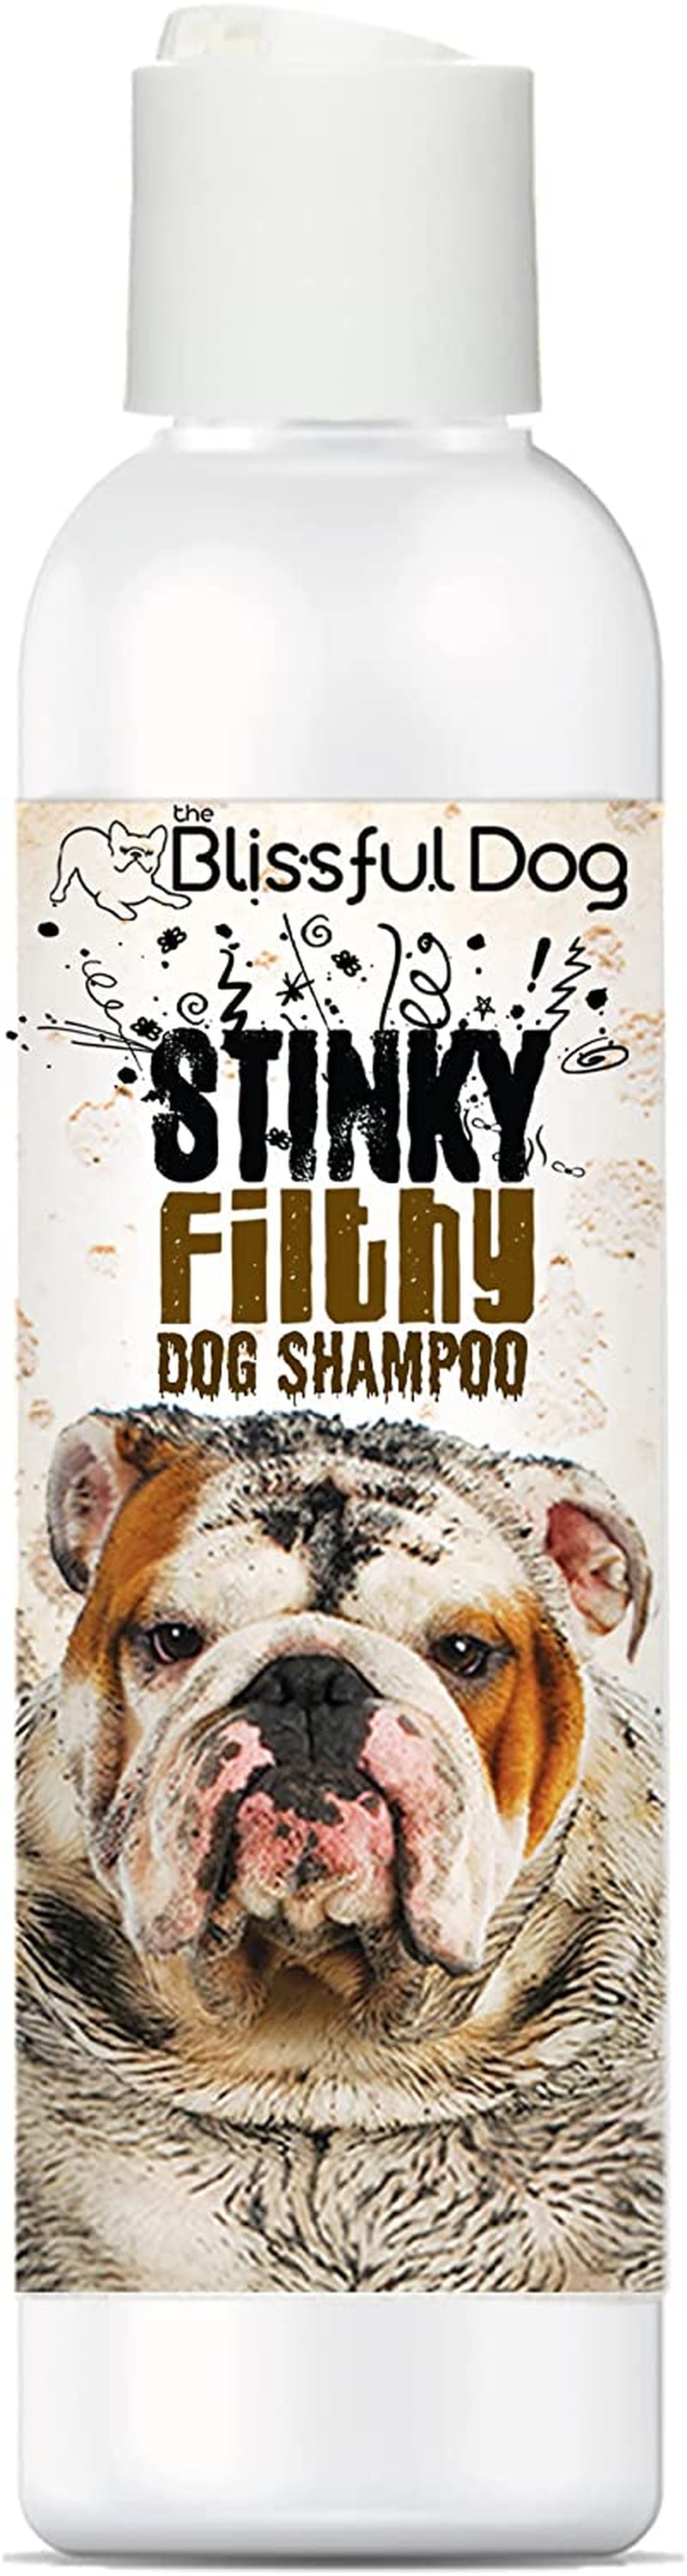 FurBreezy™ Fresh Dog Shampoo